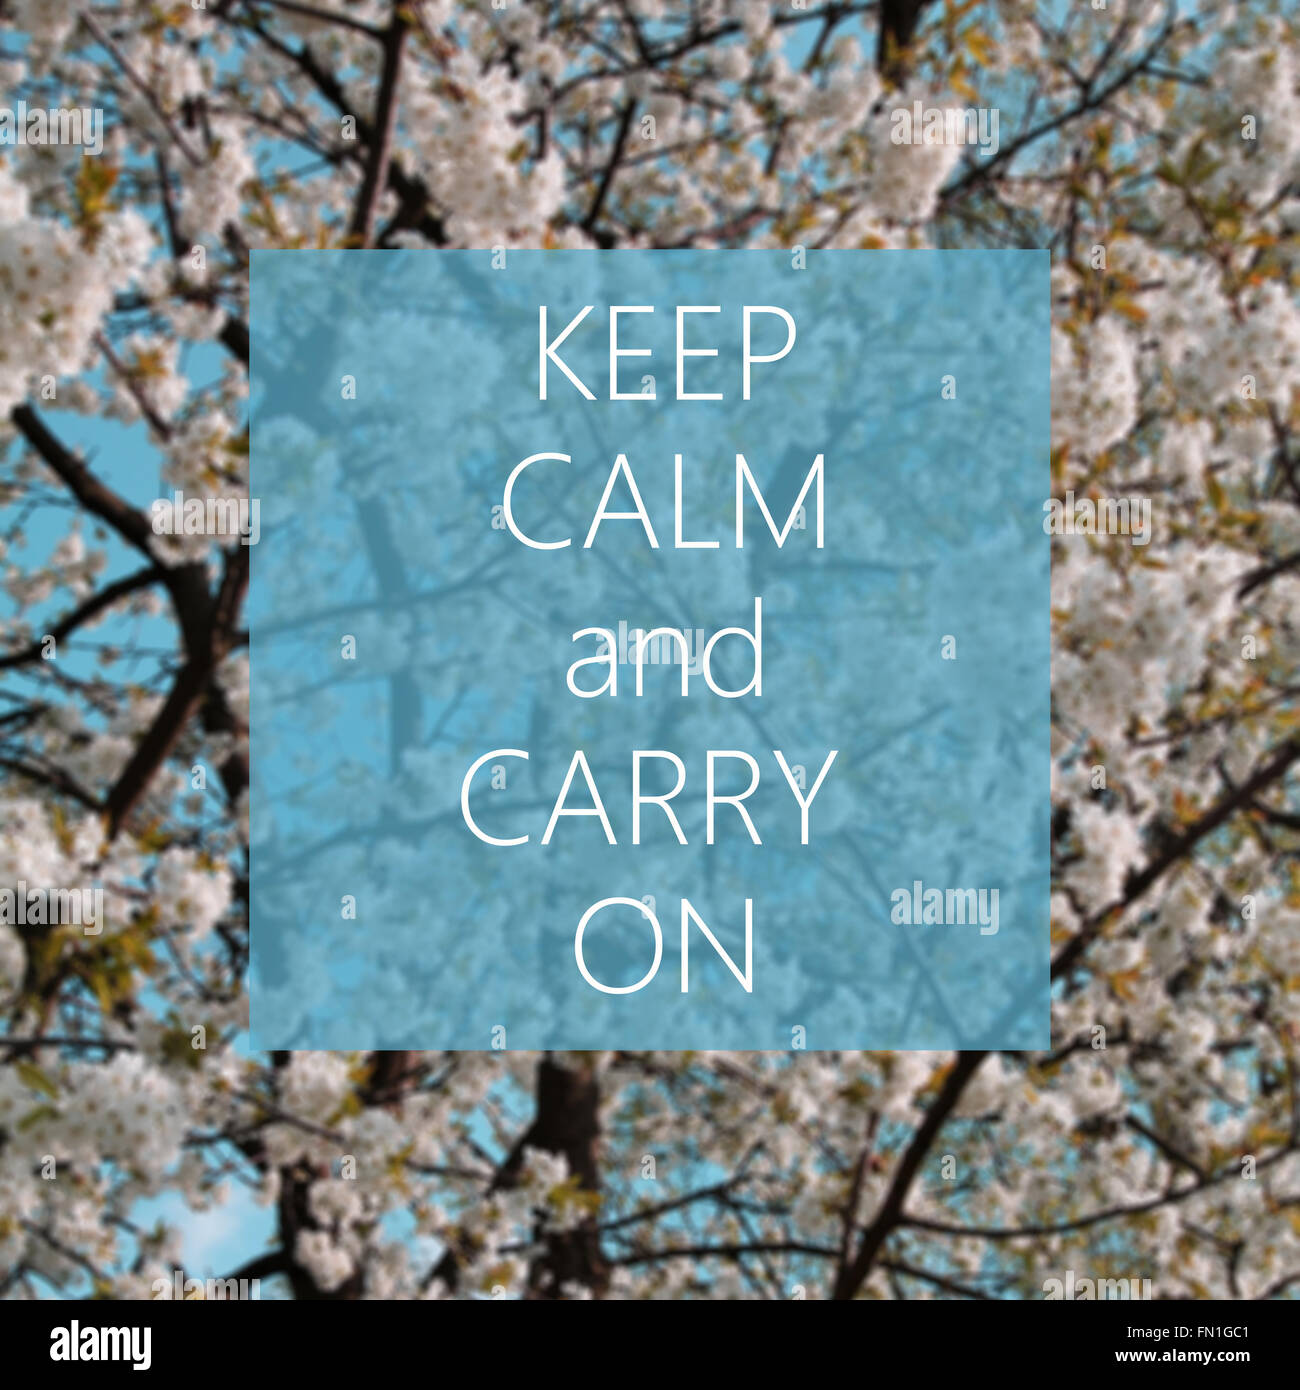 Keep calm and carry on text avec des fleurs blanches à l'arrière-plan Banque D'Images